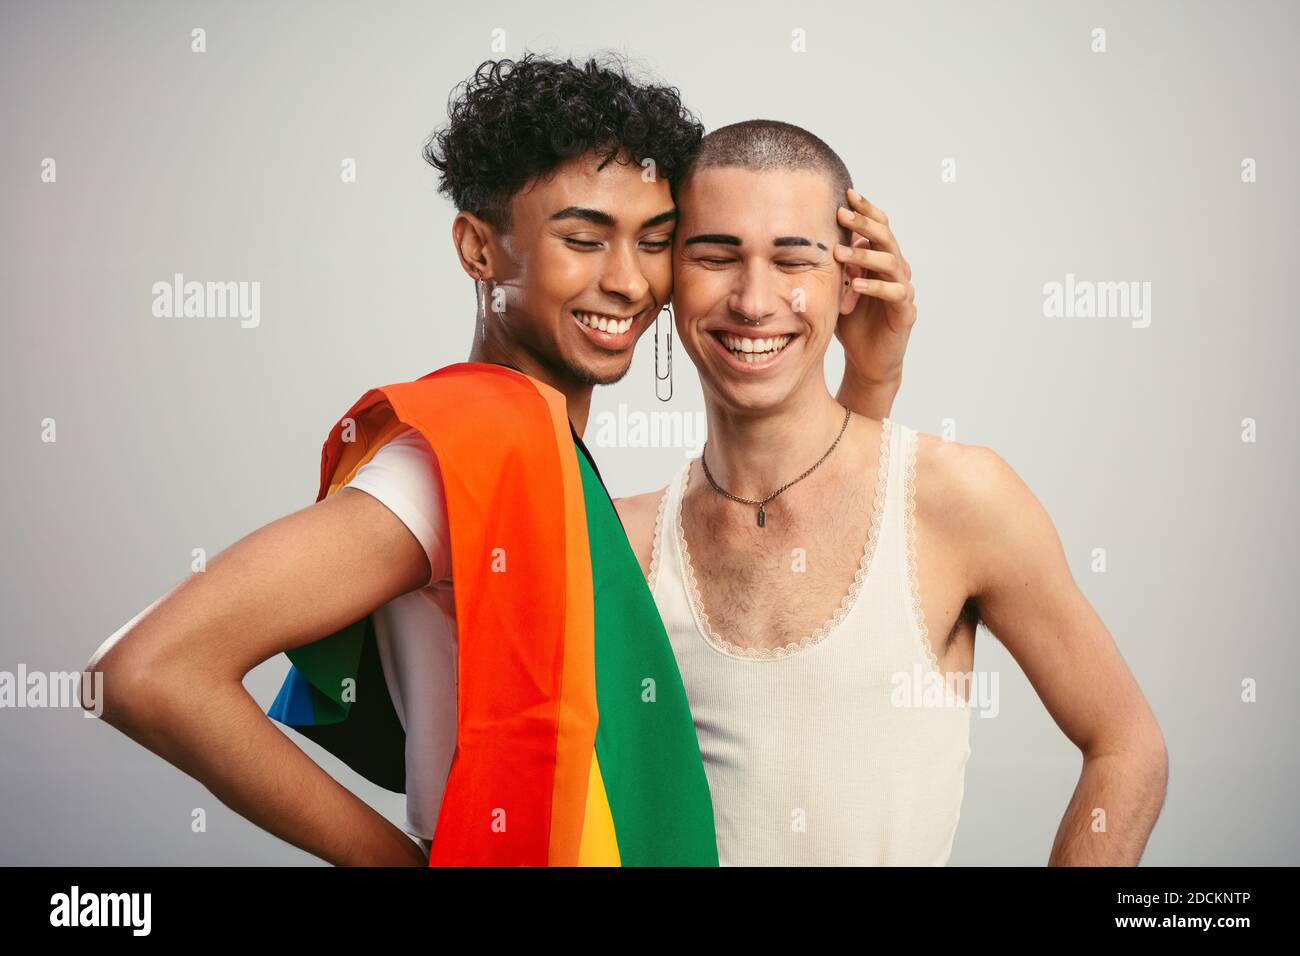 Fröhliche Homosexuell Paar mit Stolz Flagge auf weißem Hintergrund. Zwei homosexuelle Männer stehen zusammen und lächeln. Stockfoto